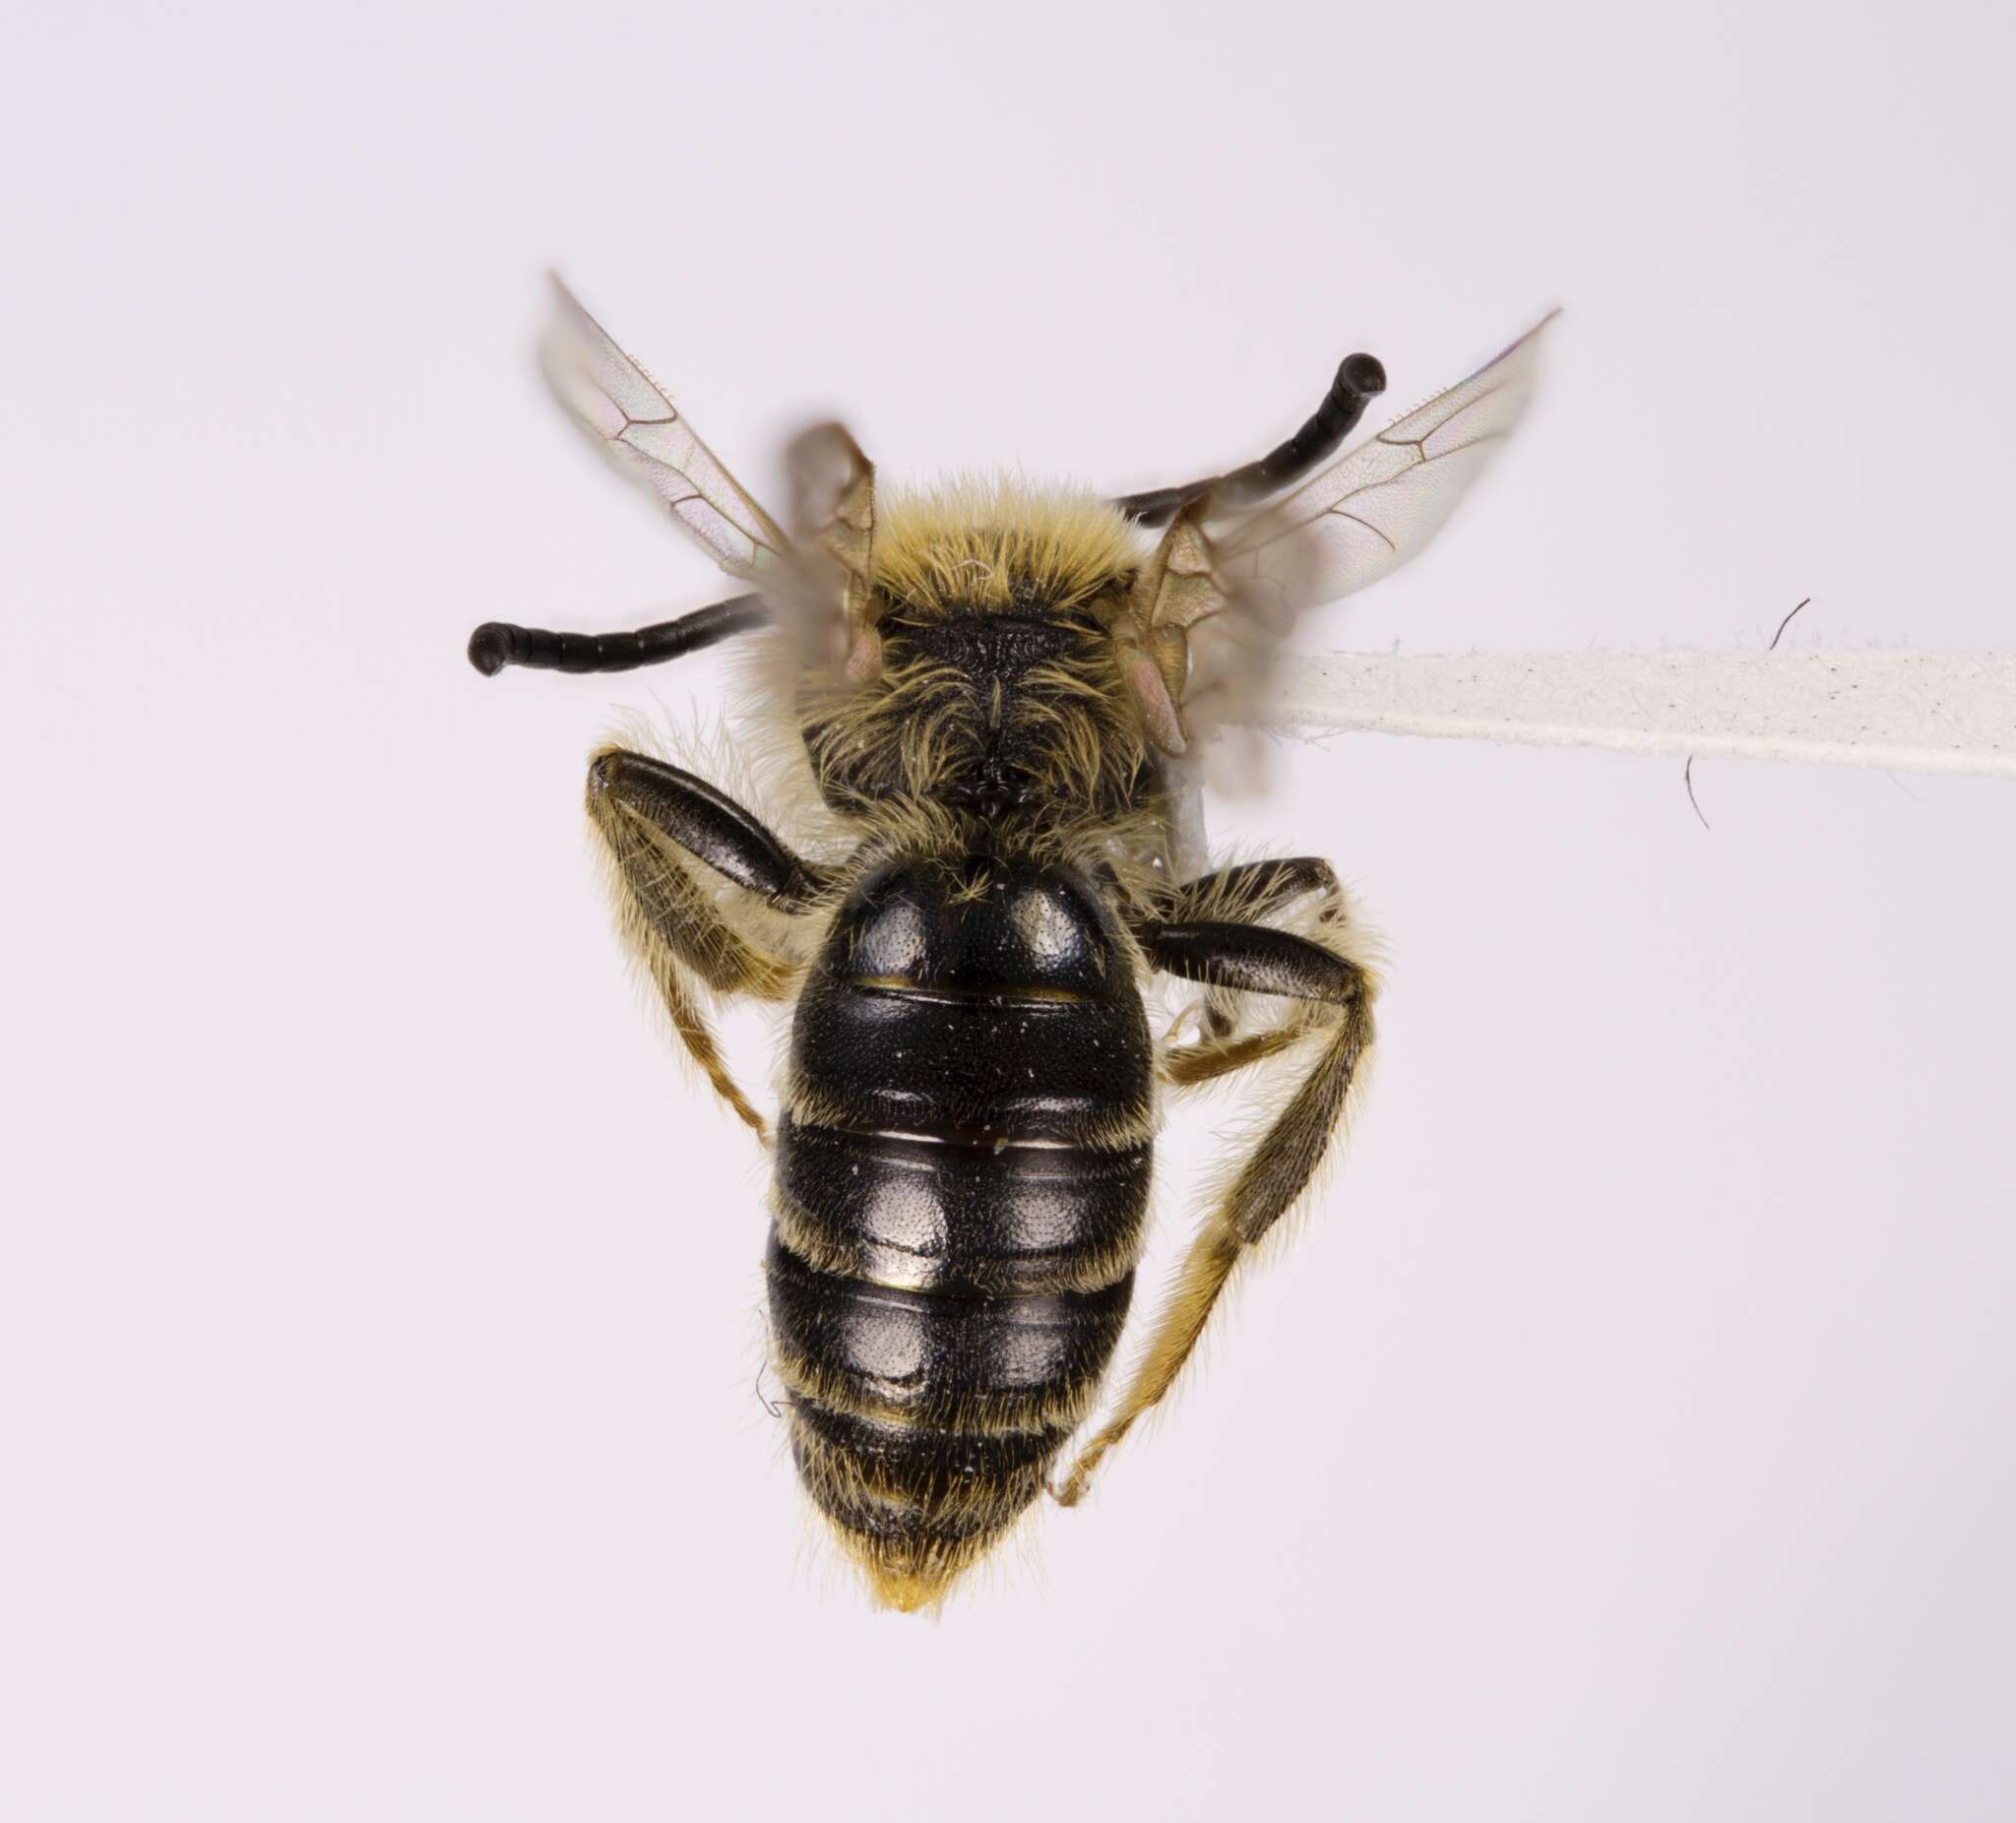 Sivun Andrena imitatrix Cresson 1872 kuva